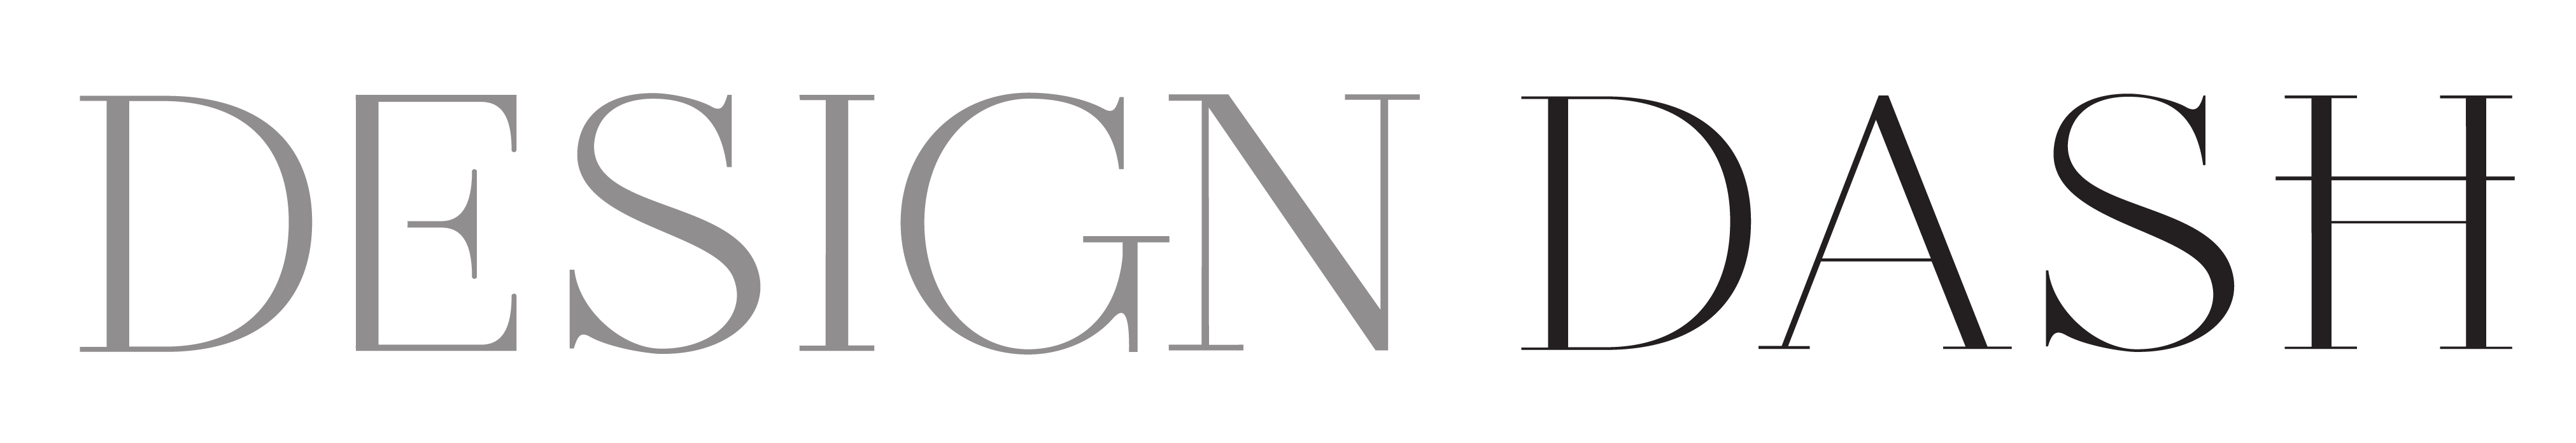 Design Dash logo